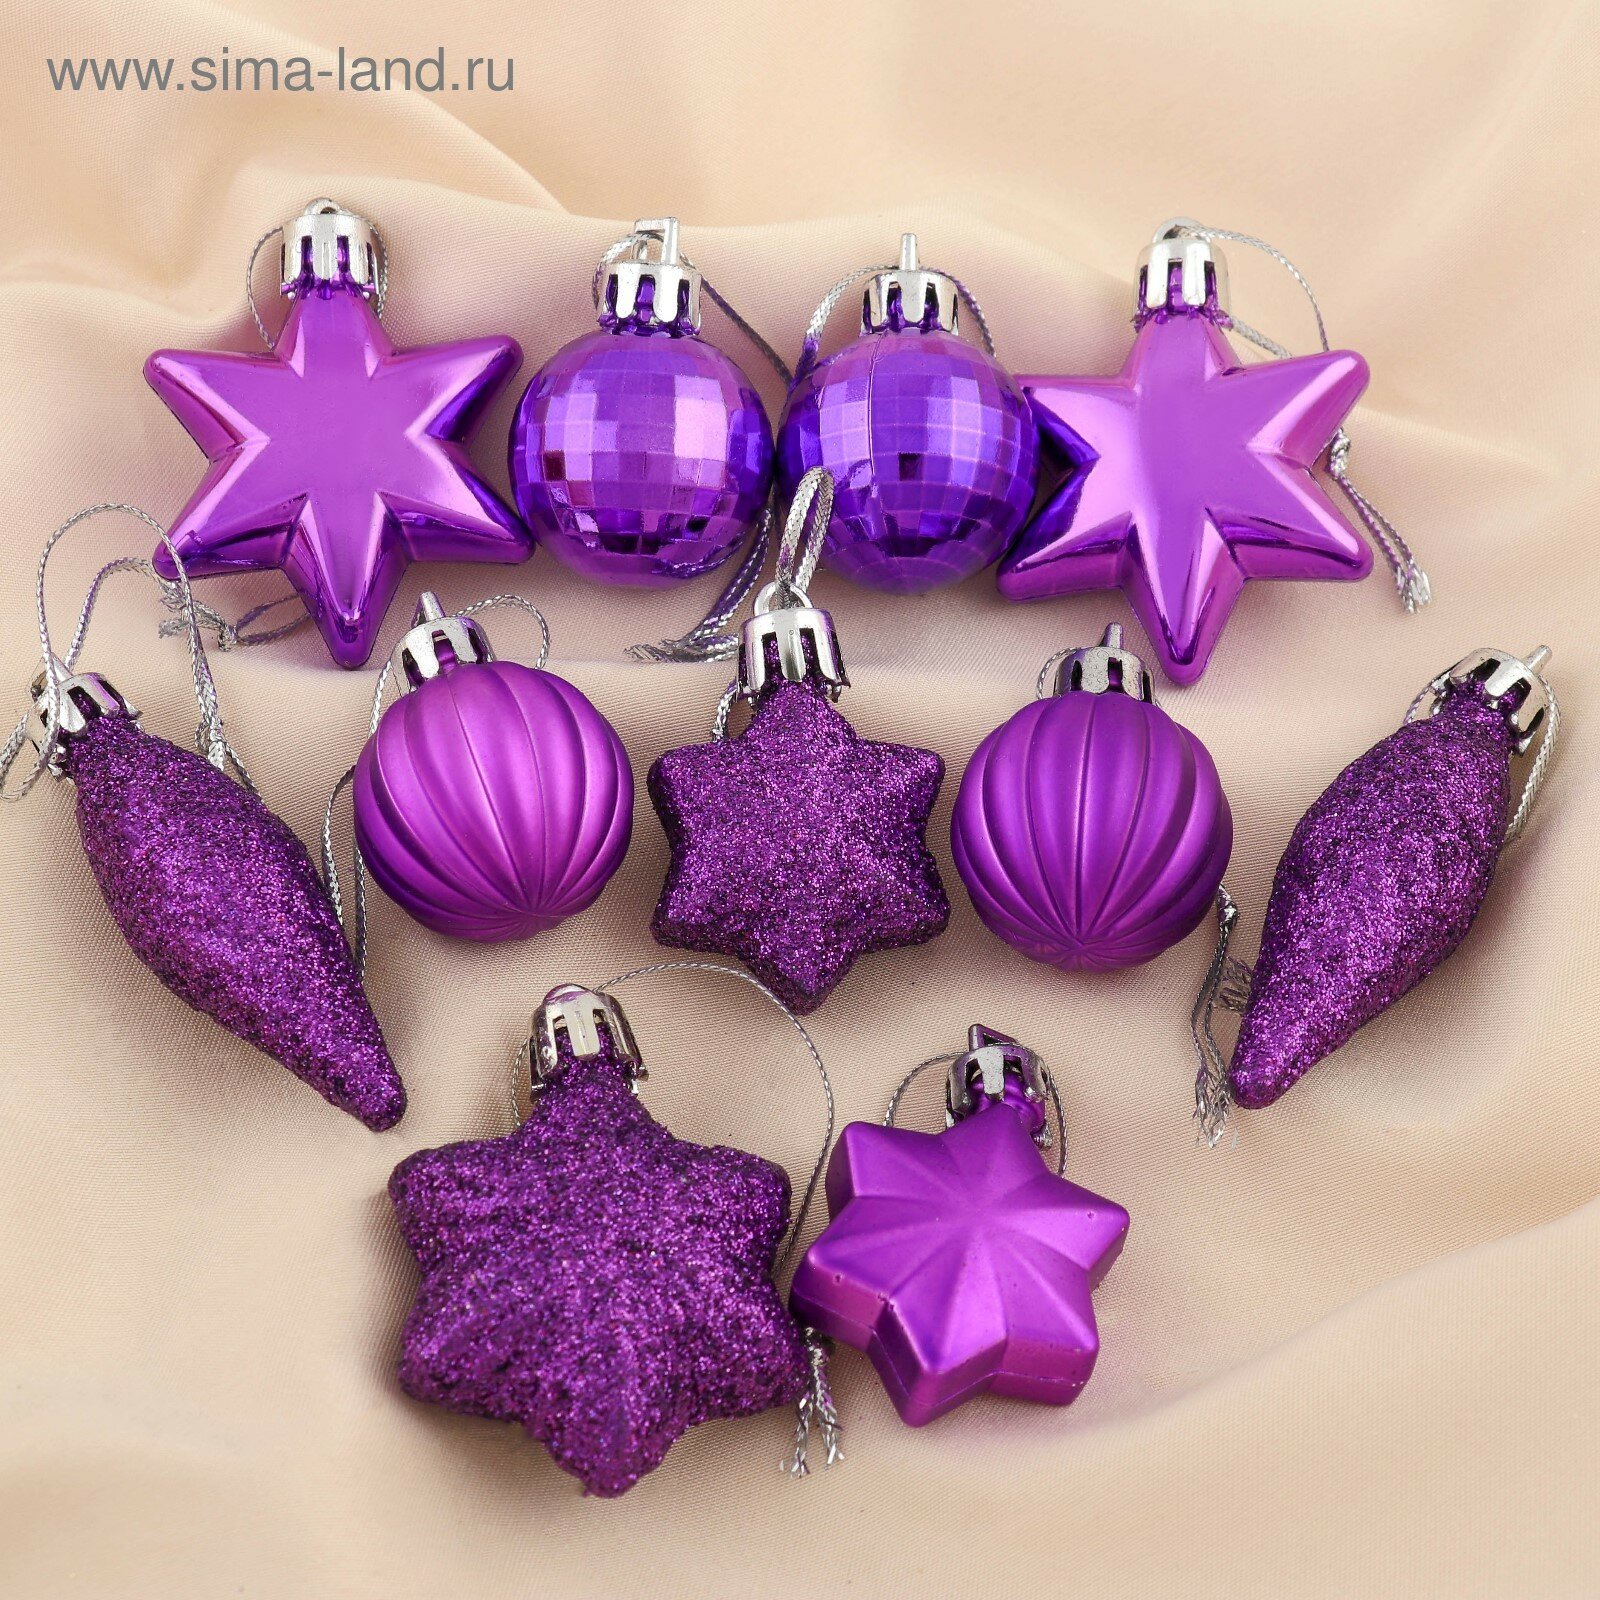 Набор украшений пластик 12 шт "Талла" (6 звёзд, 4 шара, 2 сосульки) фиолетовый